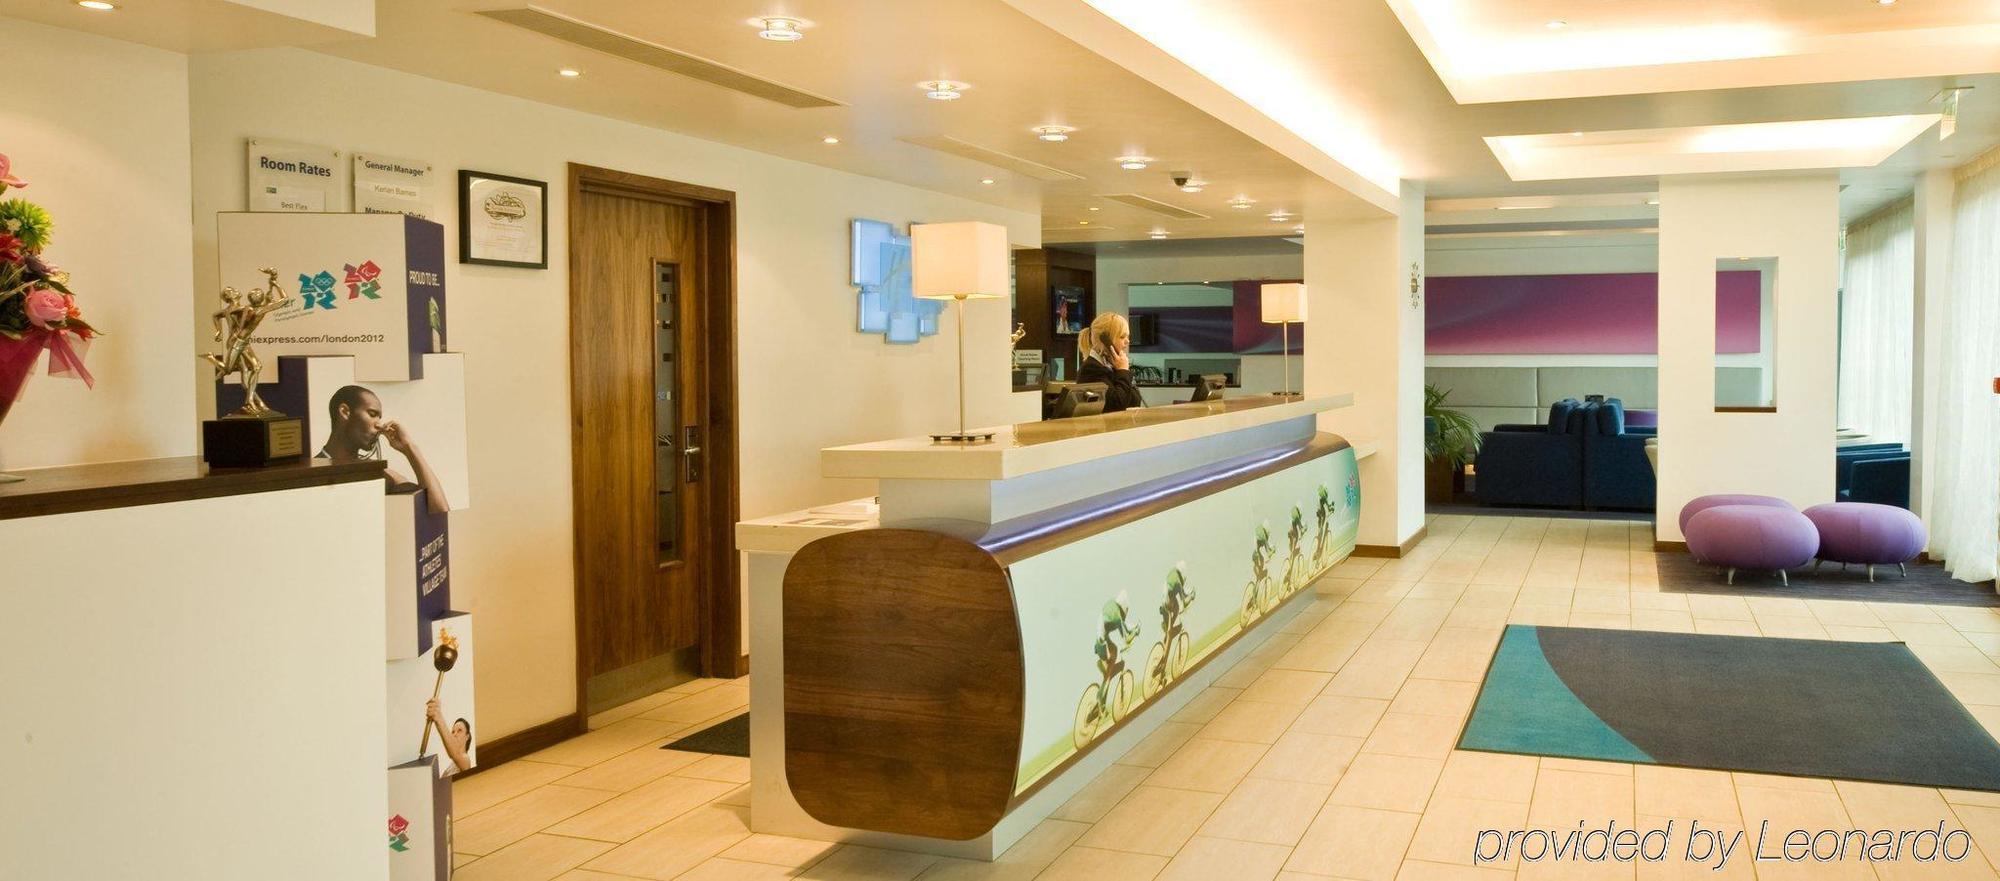 Holiday Inn Express Burnley M65 Jct 10, An Ihg Hotel Экстерьер фото